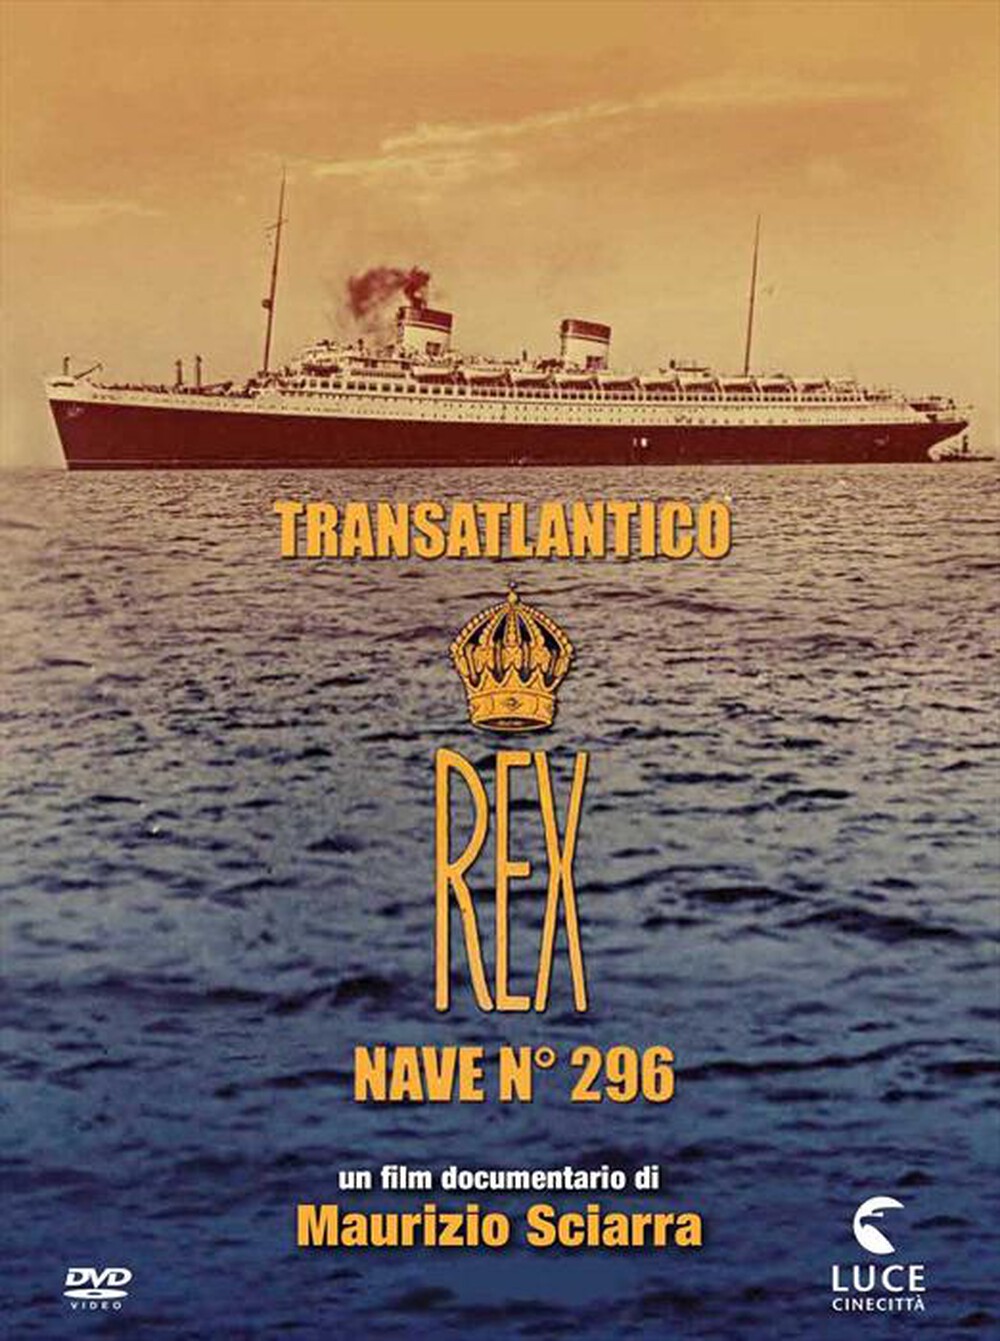 "ISTITUTO LUCE - Transatlantico Rex - Nave 296"